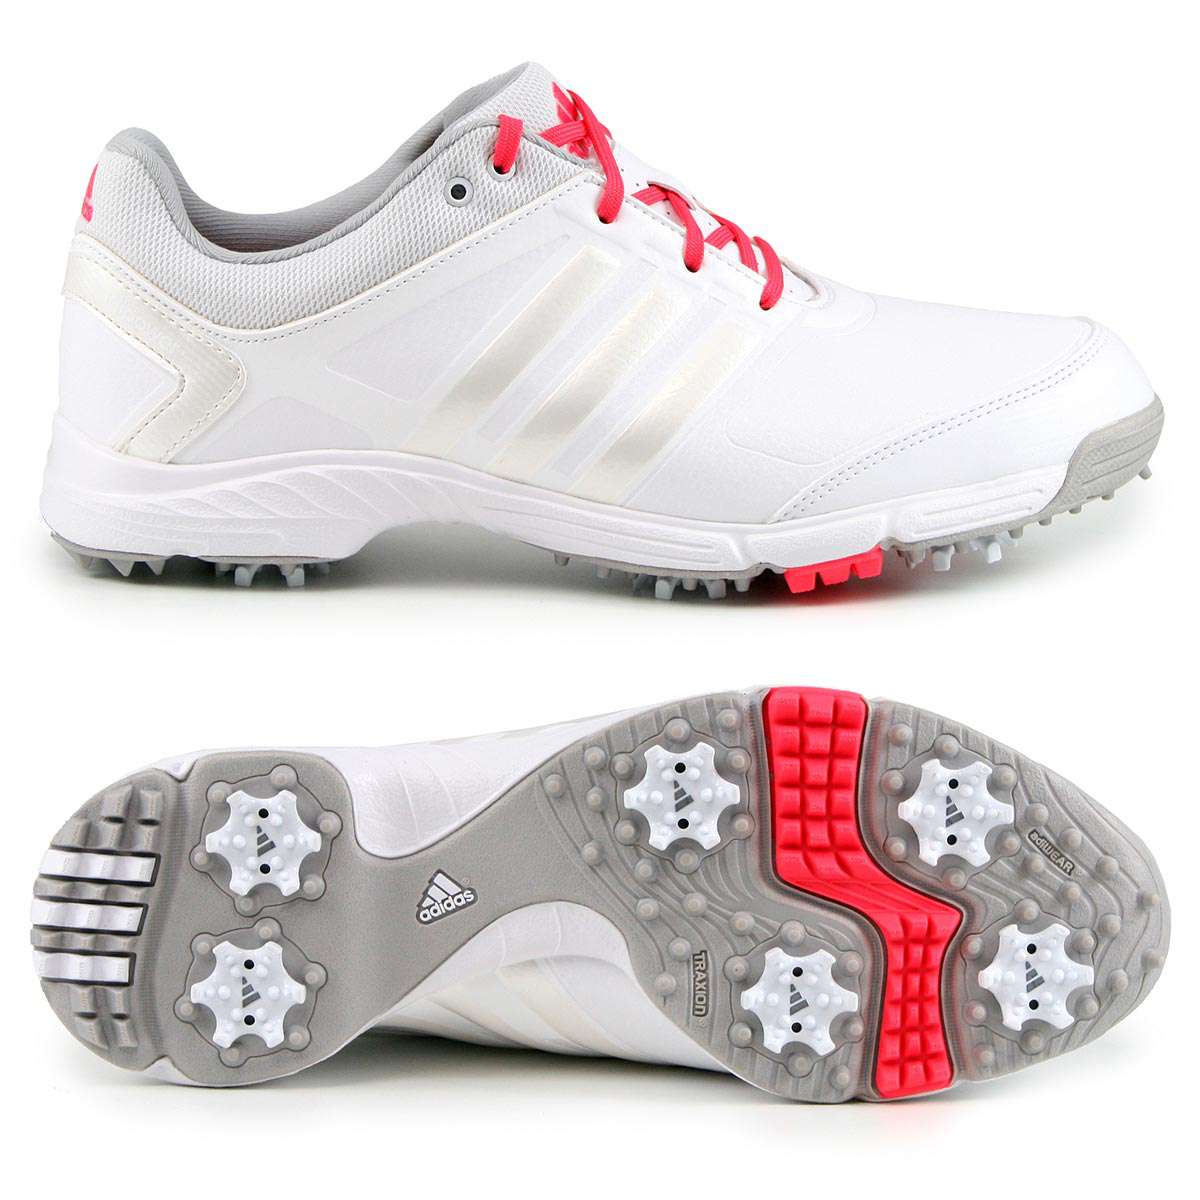 Adidas adipower TR Damen Golfschuhe, Weiß / Hellgrau / Rot günstig kaufen Golflädchen